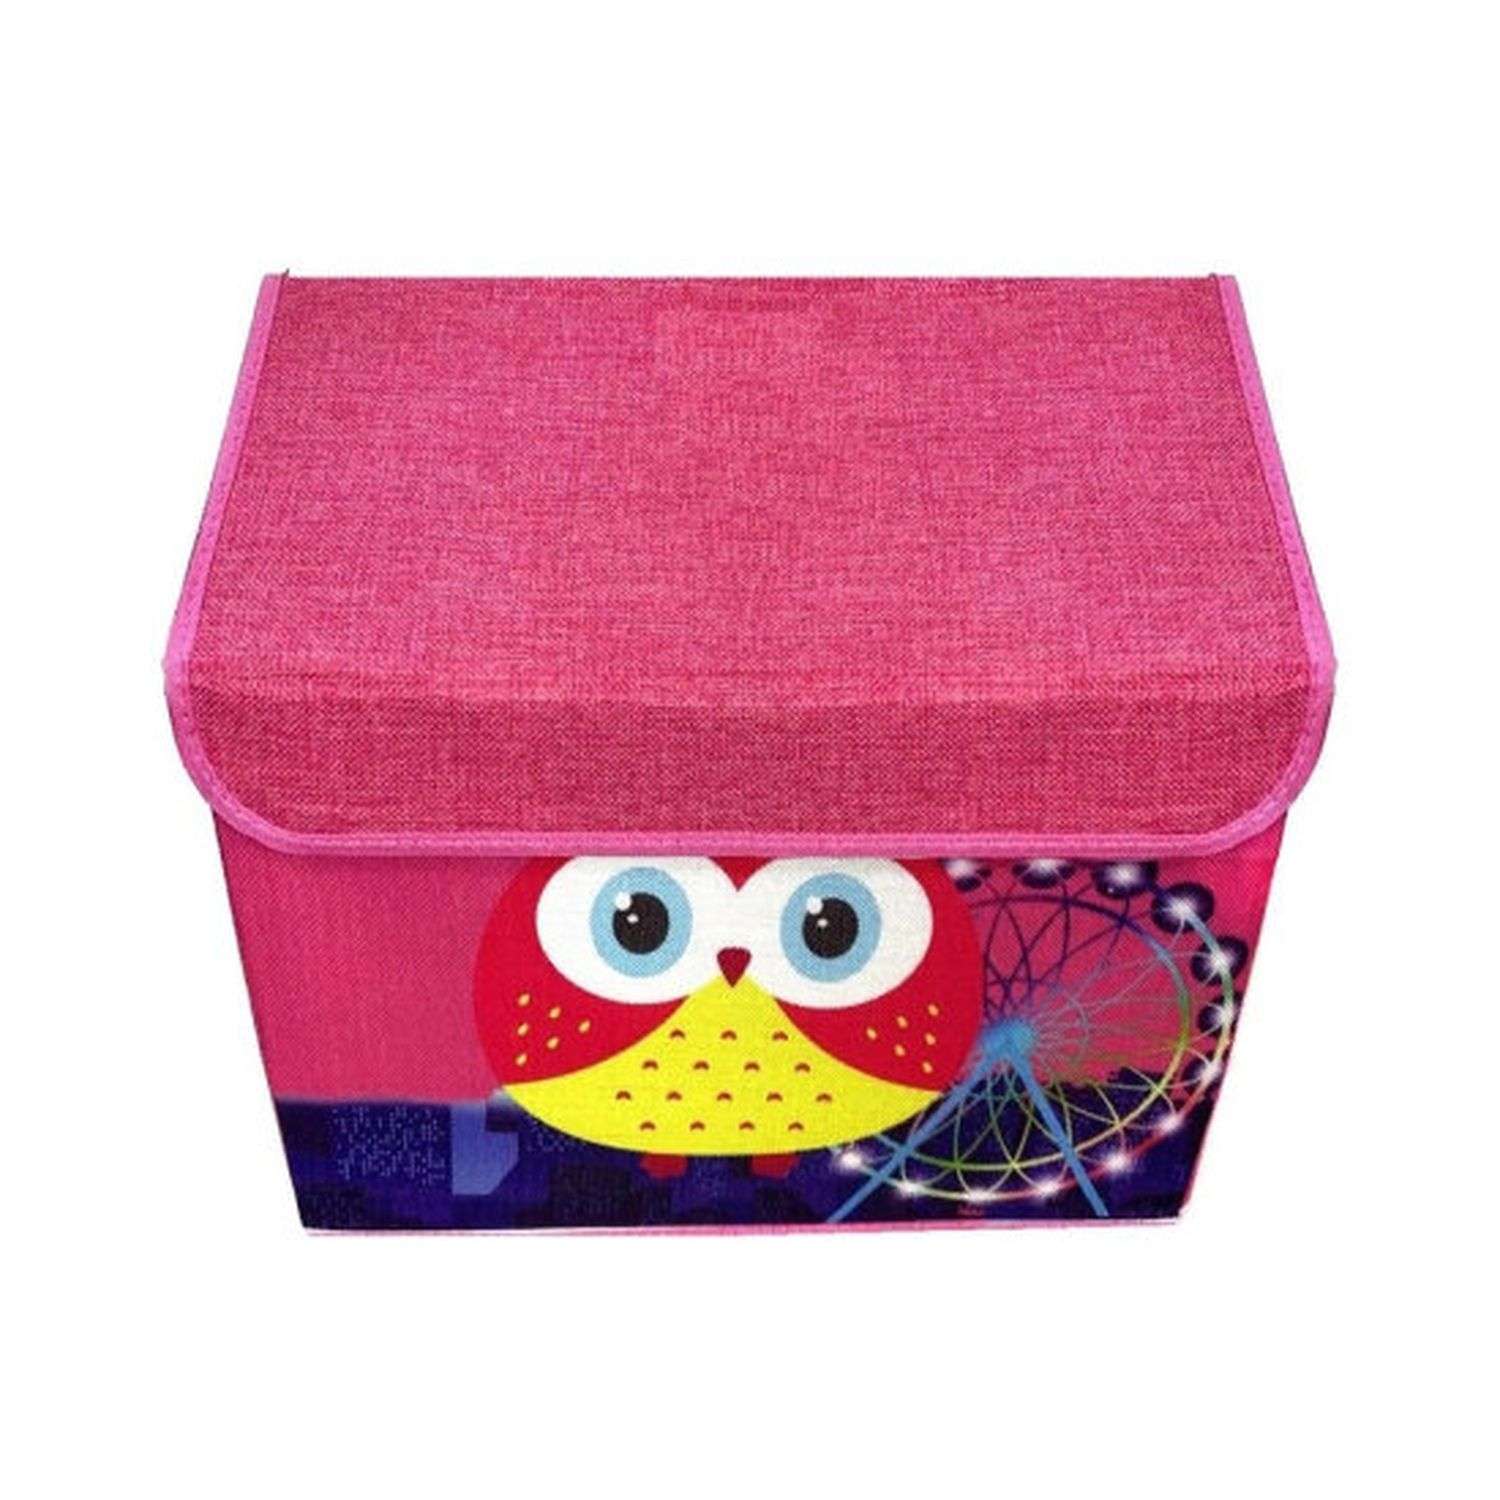 Короб для игрушек Keyprods складной Совушка розовый - фото 1